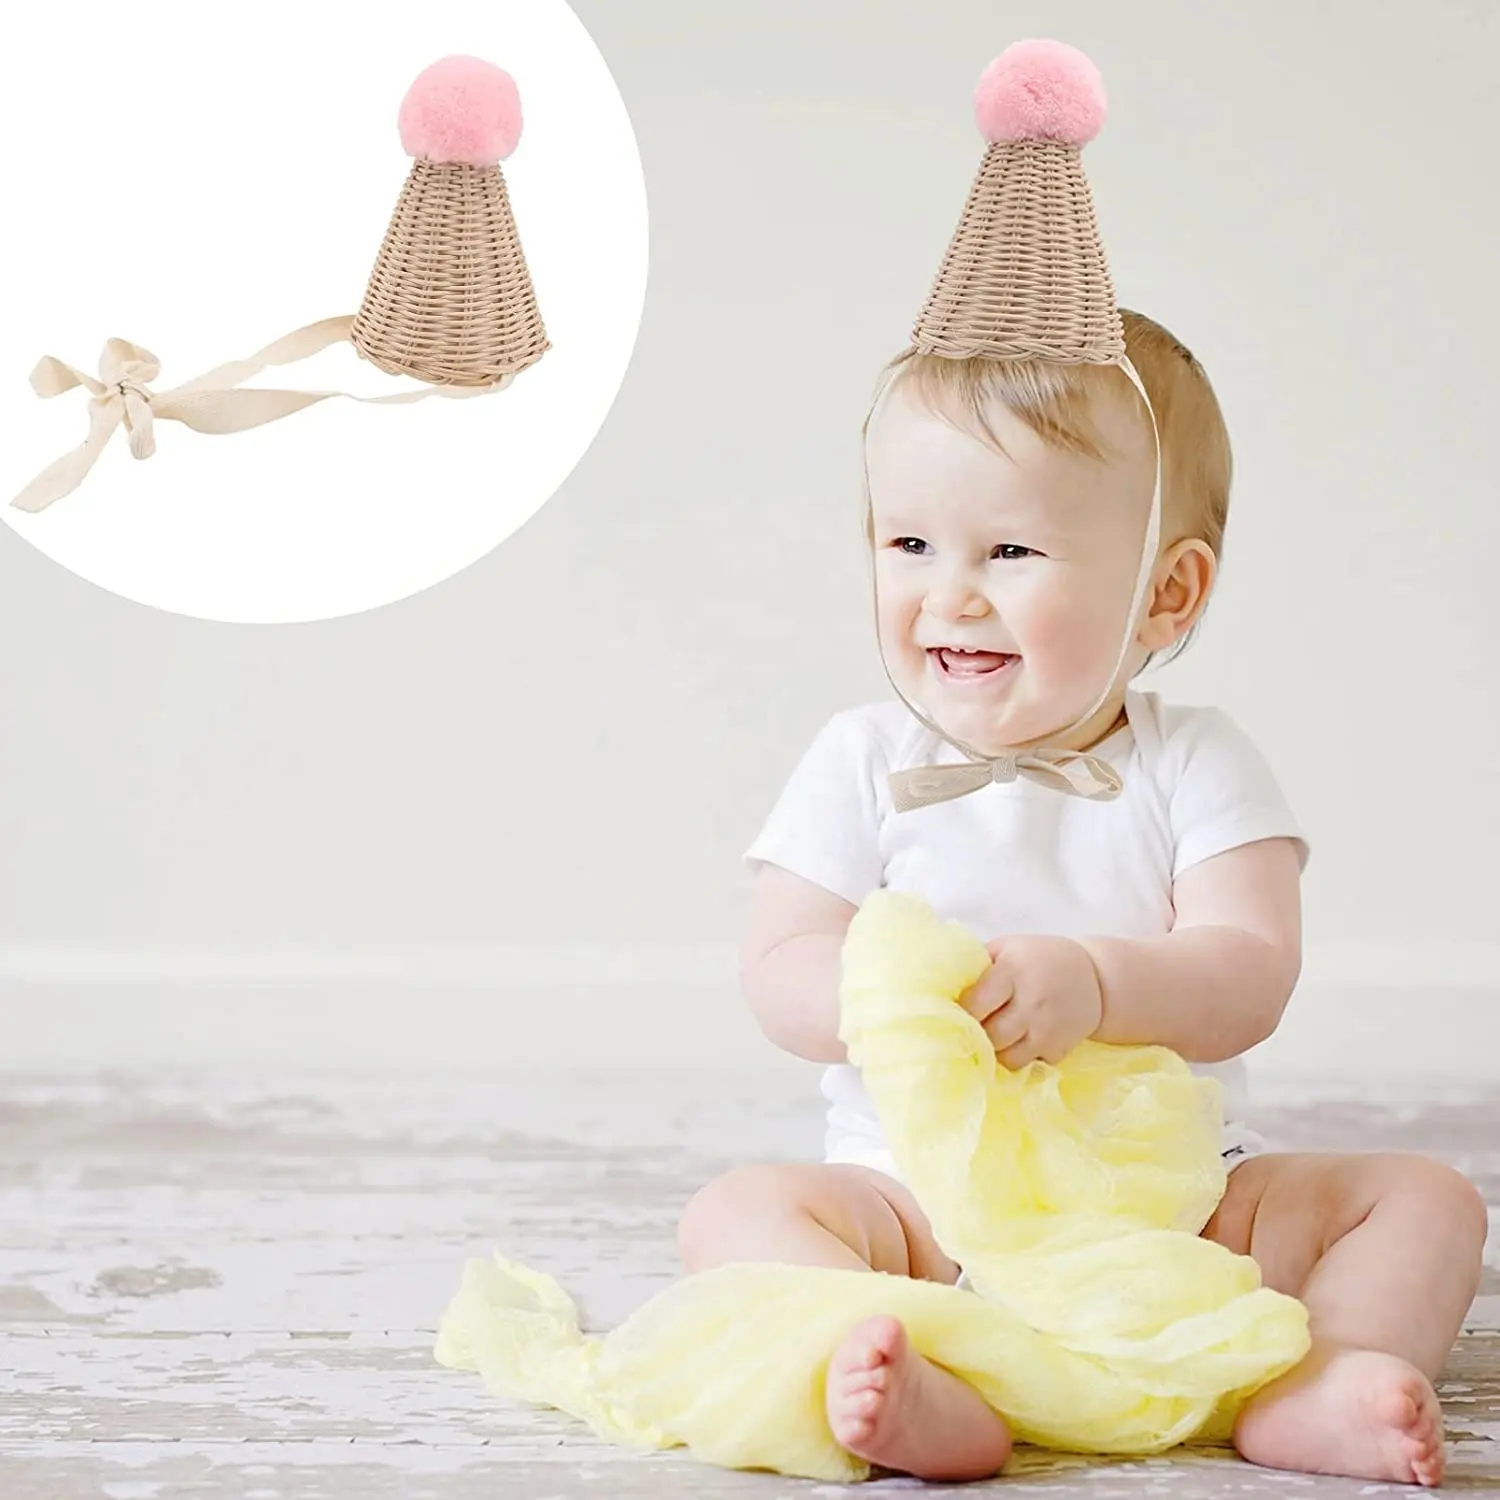 Wettbewerbs fähiger Preis Rattan Baby Hüte aus gezeichnete Qualität Spaß Geburtstags feier umwelt freundliche Kinder Kegel Hut